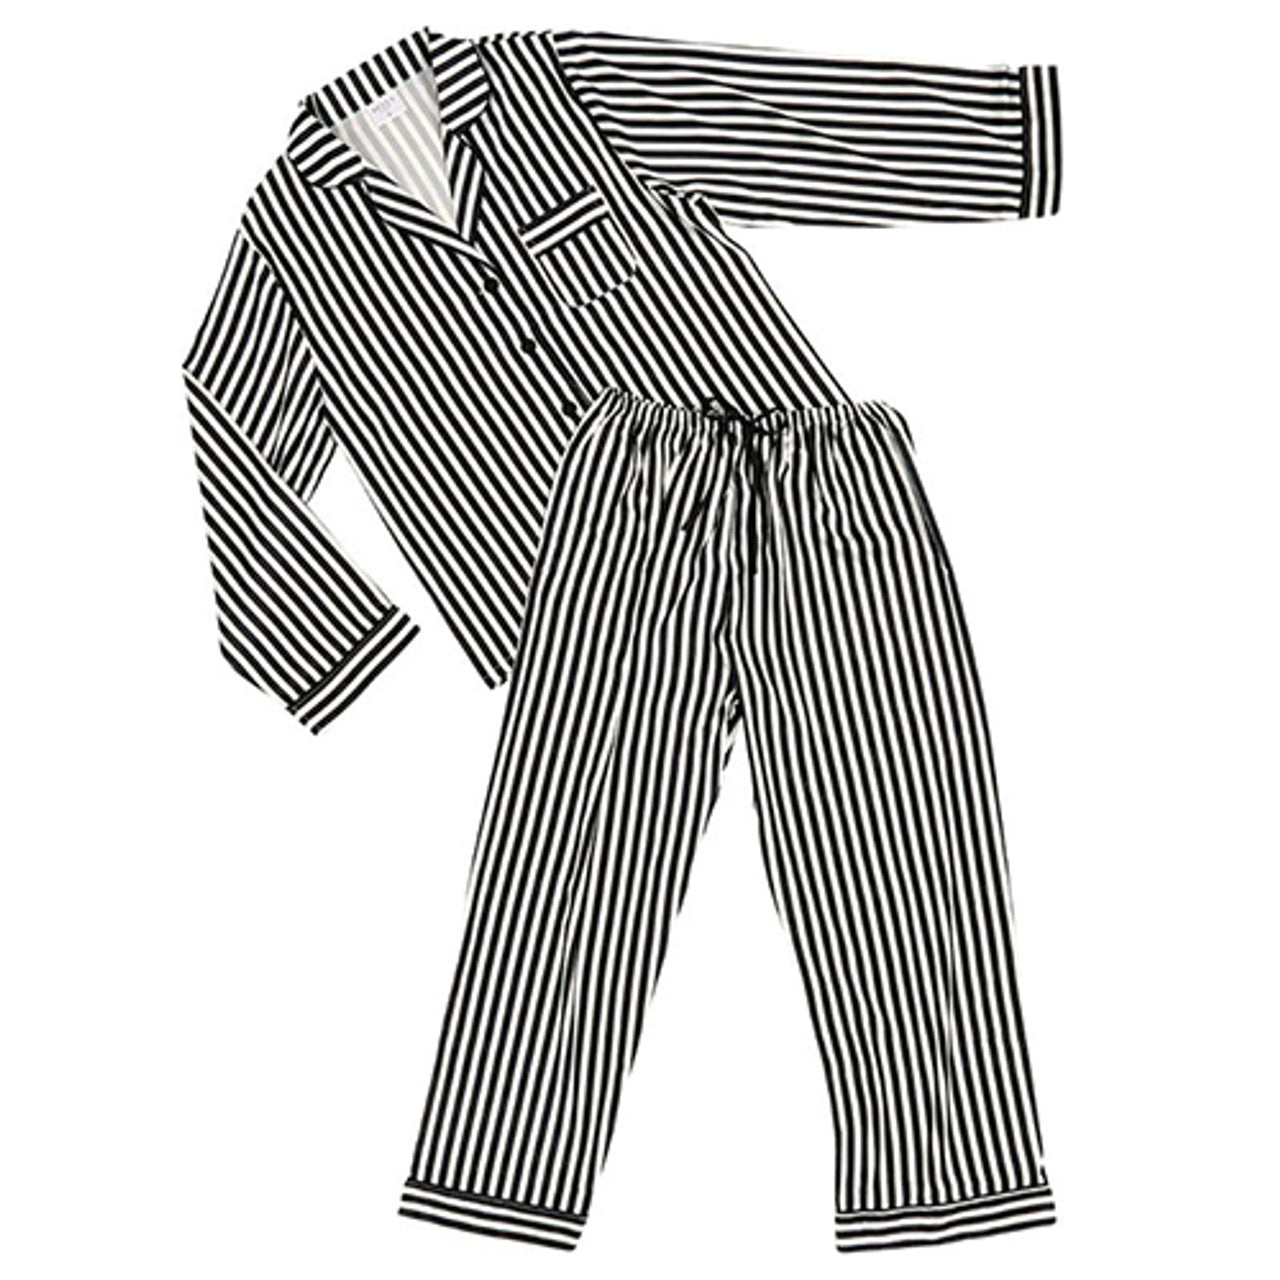 Bl/Wht Stripe PJ Set